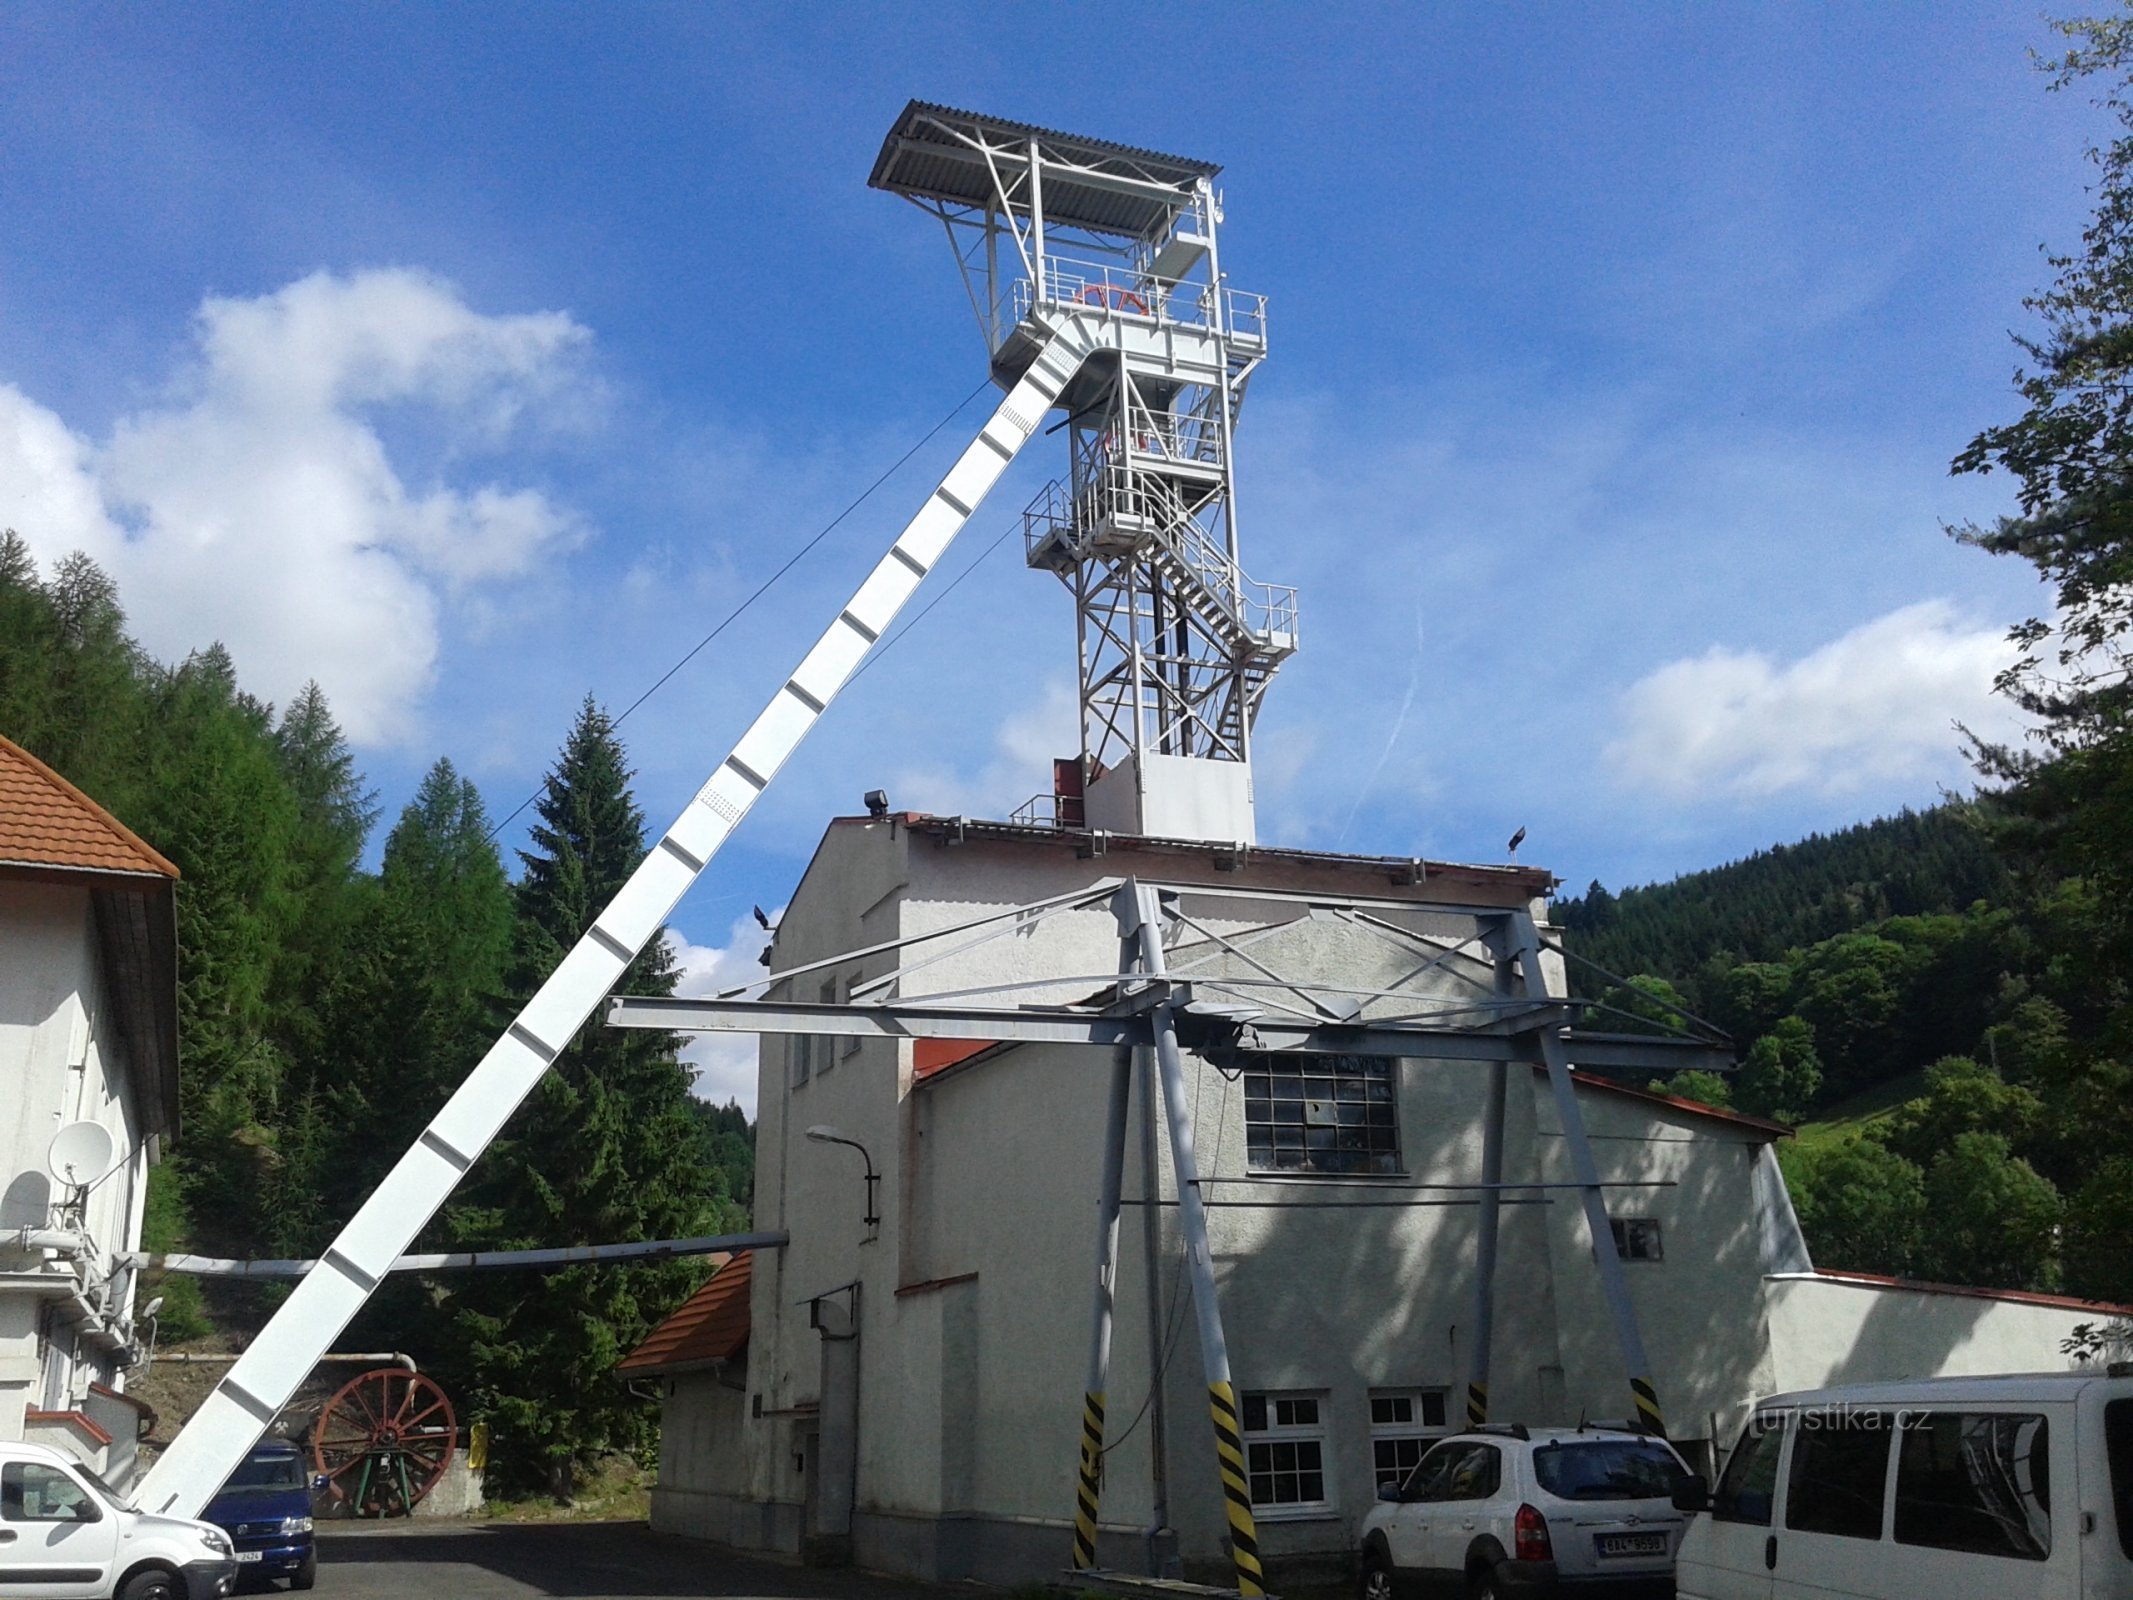 La torre mineraria della miniera di Svornost